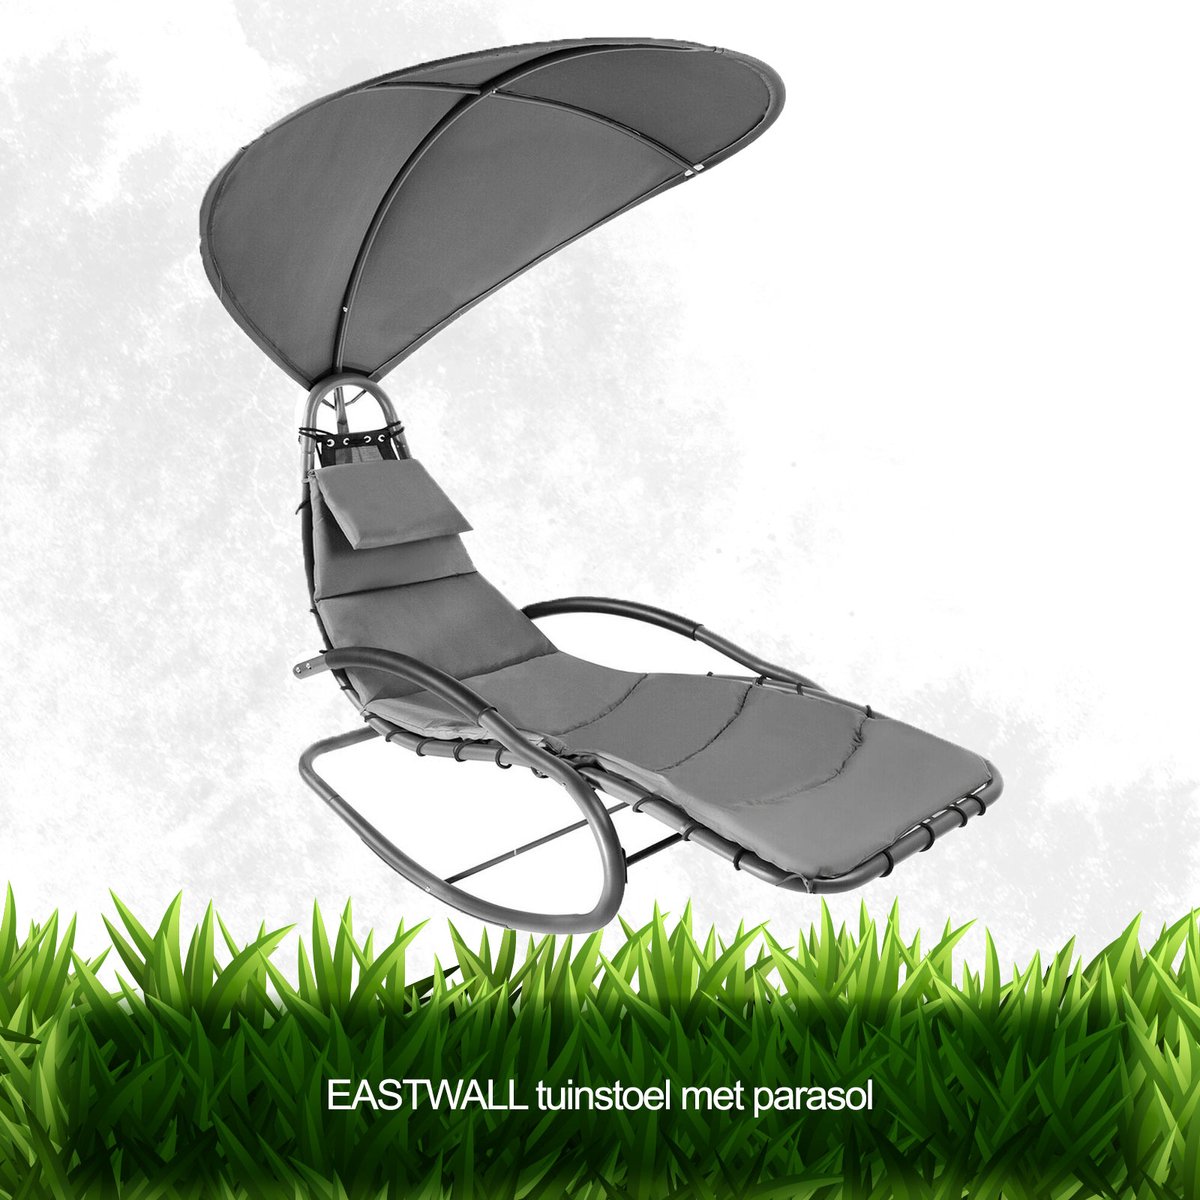 EASTWALL tuinstoel met parasol - ligstoel met zonbescherming - luxe metalen tuistoel - zonnebed - loungebed - schommelstoel - mooi design - donker grijs - 178x183x76cm